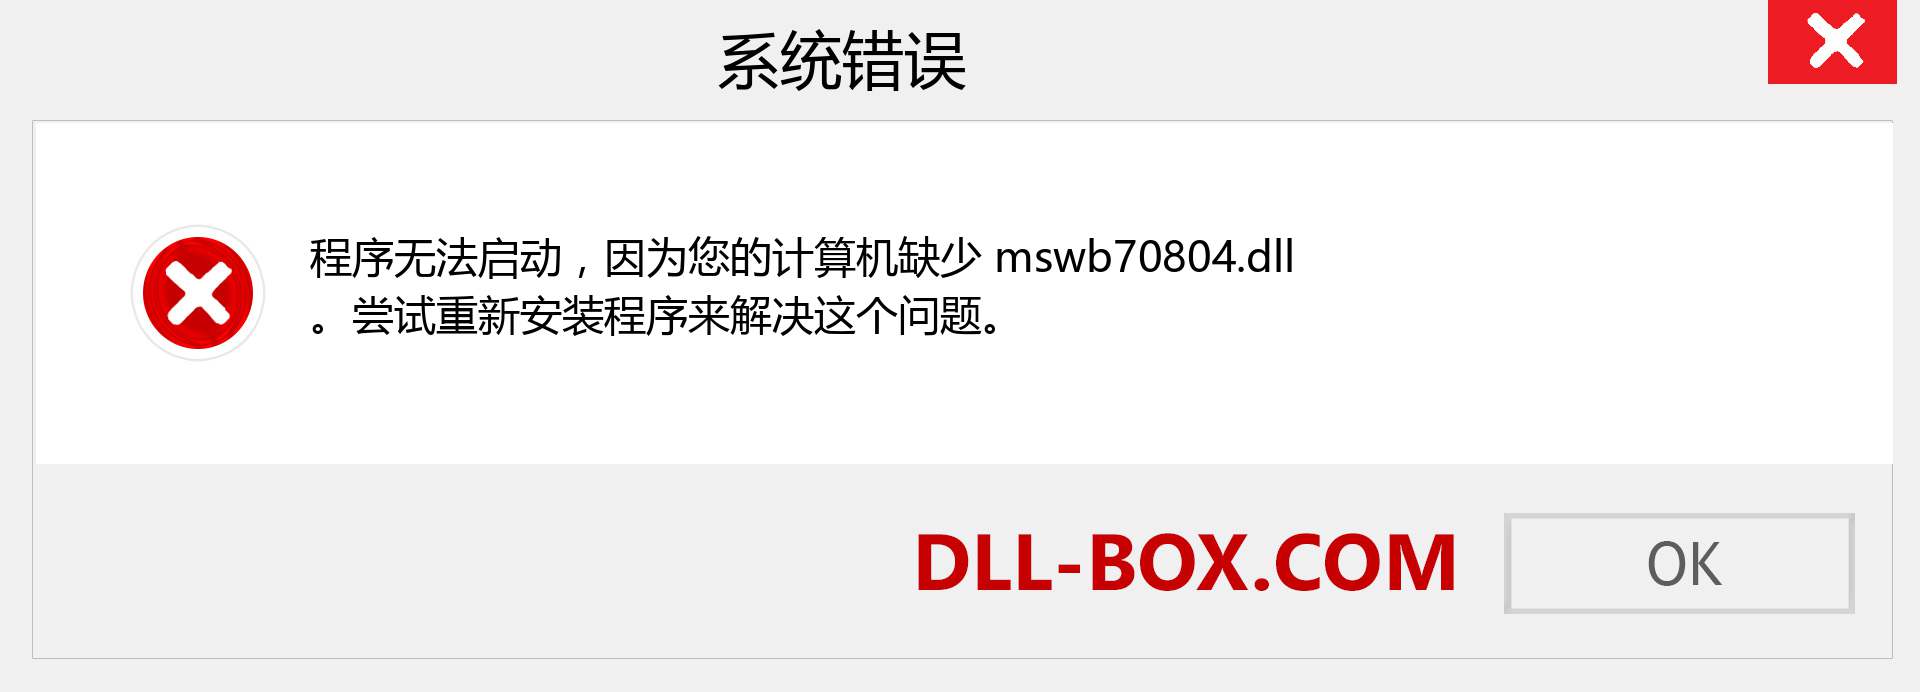 mswb70804.dll 文件丢失？。 适用于 Windows 7、8、10 的下载 - 修复 Windows、照片、图像上的 mswb70804 dll 丢失错误